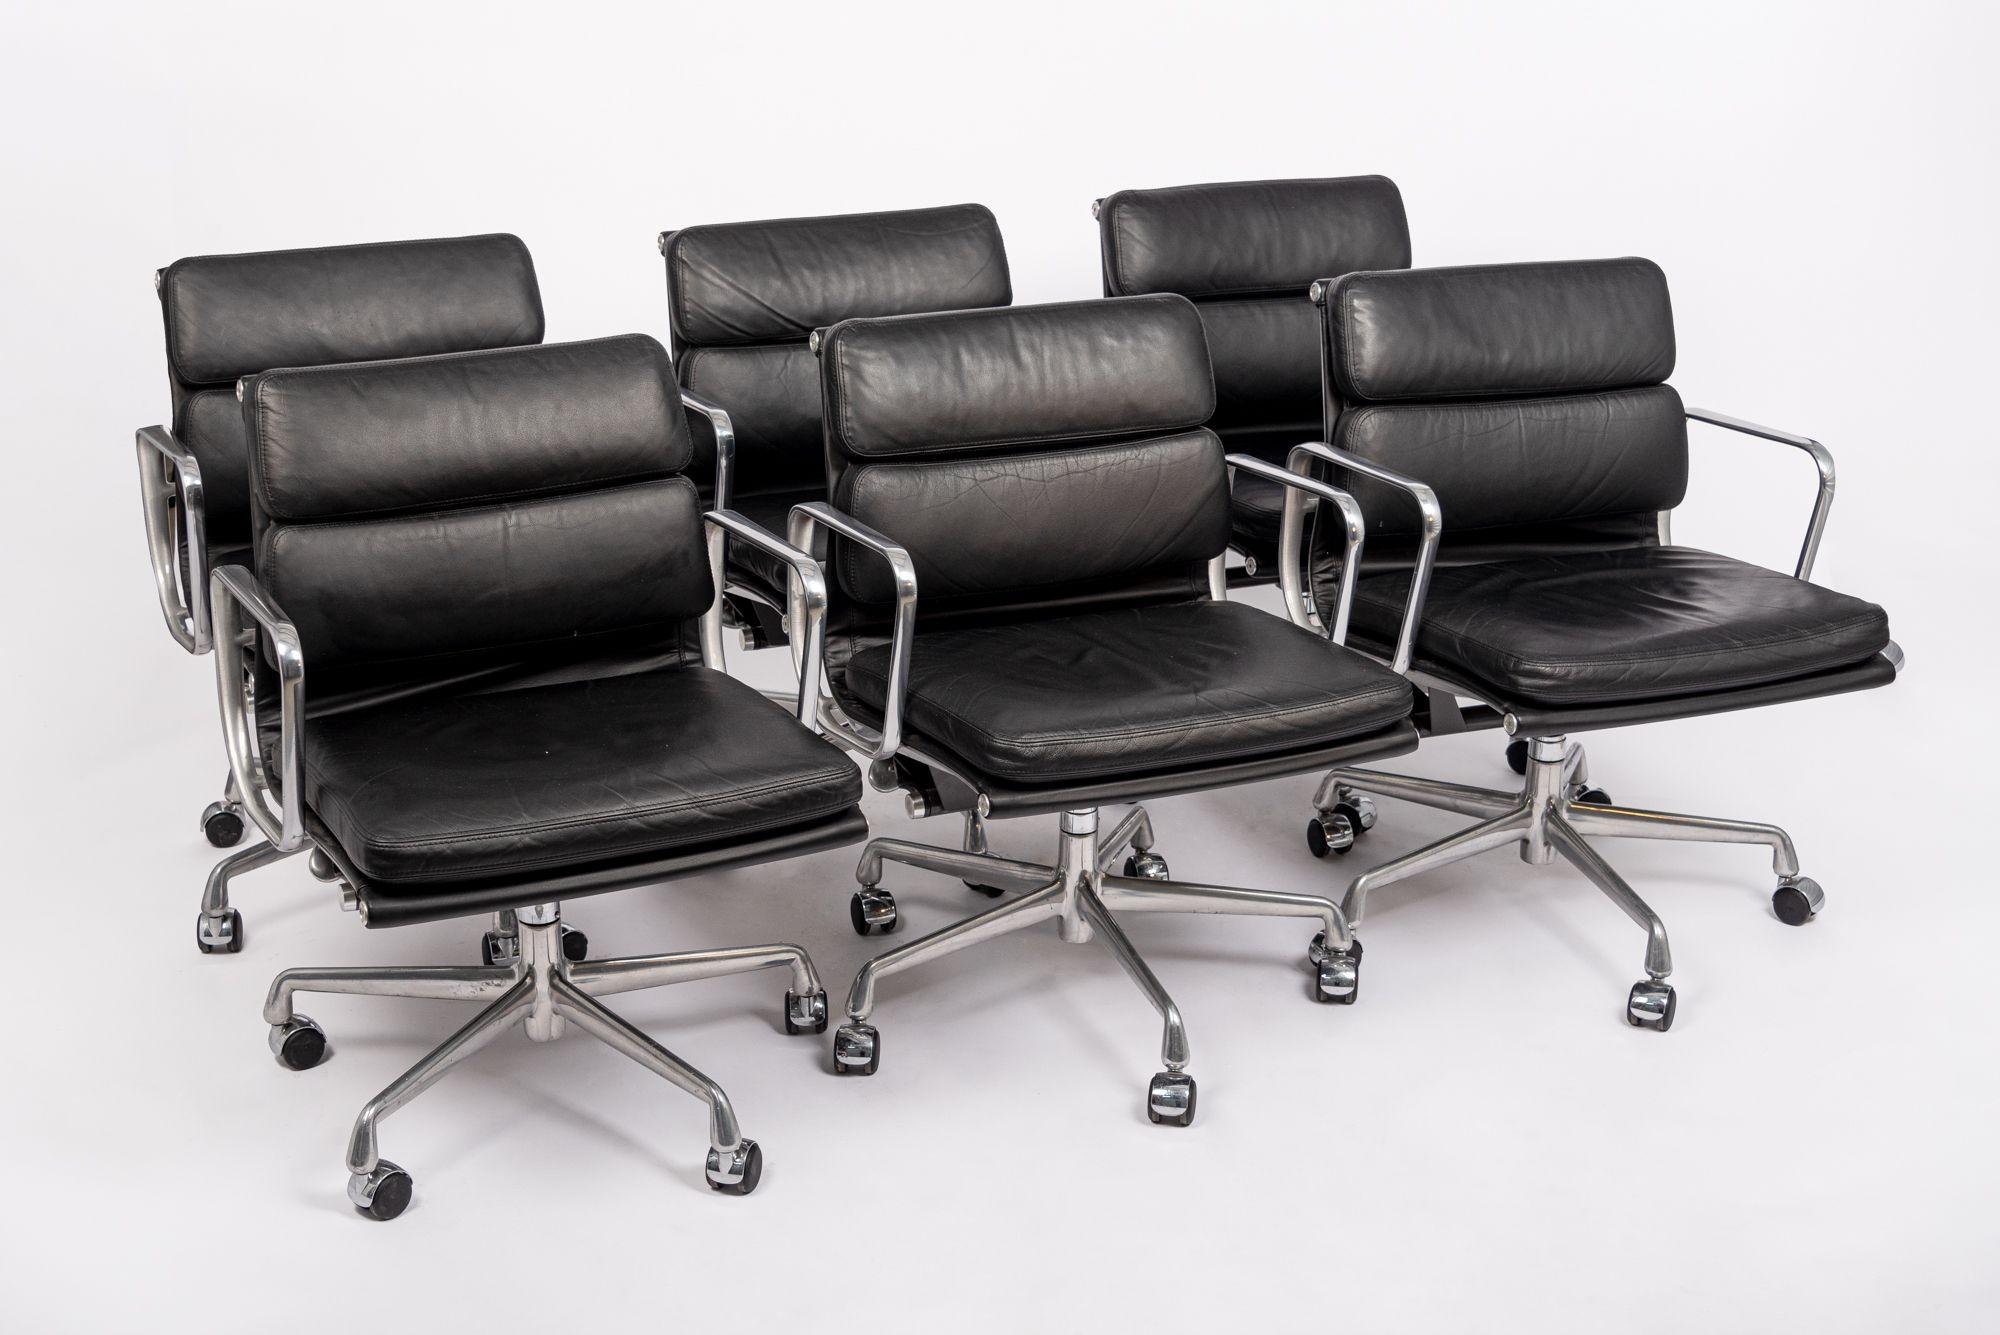 Diese authentischen Eames for Herman Miller Soft Pad Management Height Bürostühle aus schwarzem Leder der Aluminum Group Collection'S wurden im Jahr 2001 hergestellt. Dieser klassische, moderne Bürostuhl aus der Mitte des Jahrhunderts wurde 1969 von